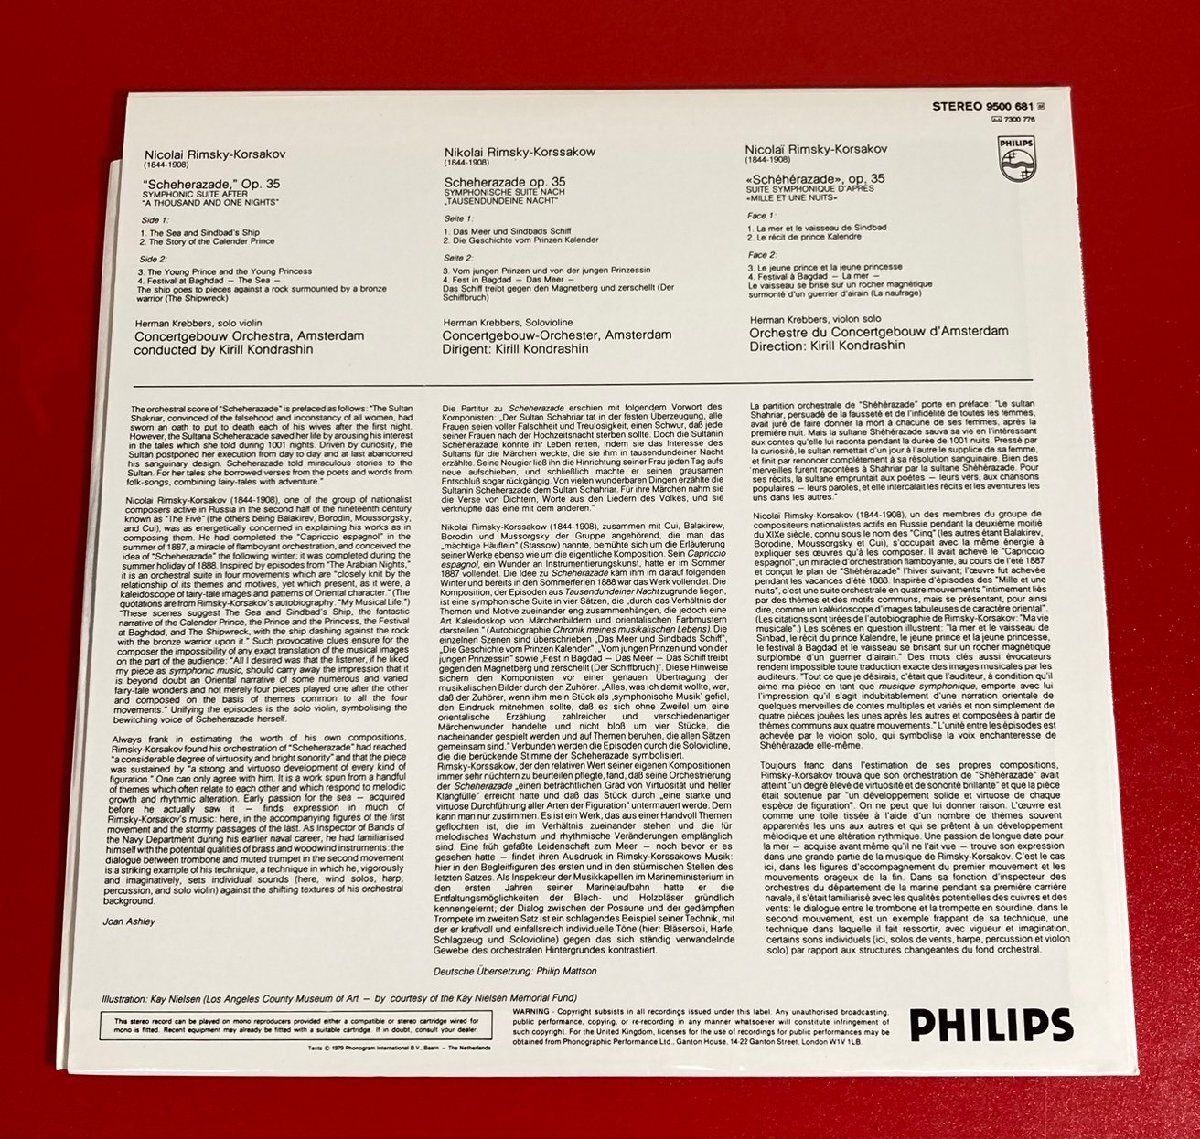 【レコードコレクター放出品】 LP コンドラシン コルサコフ シェエラザード 蘭盤 PHILIPSの画像2